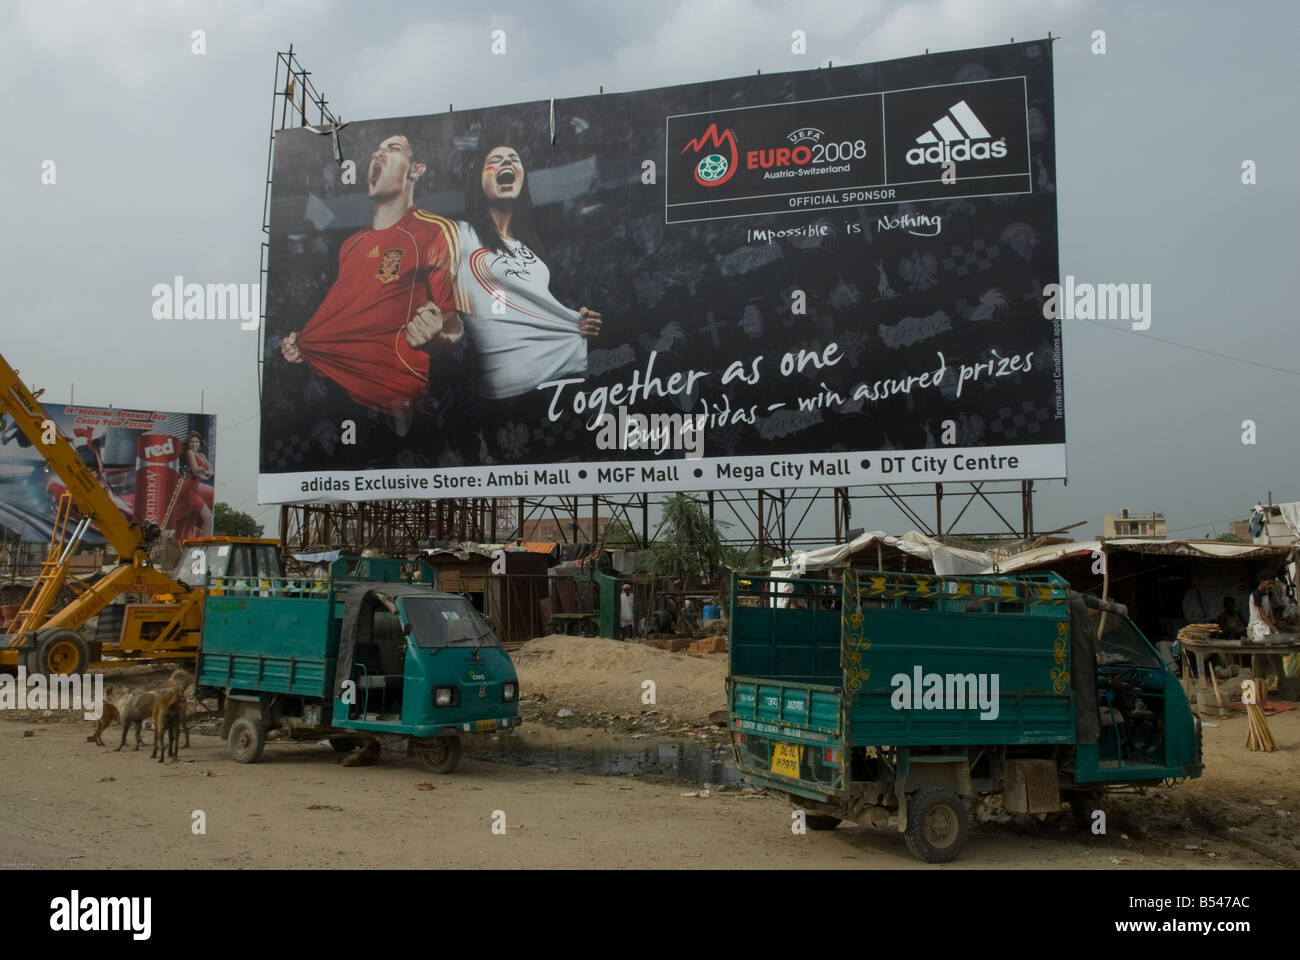 Adidas Advert Stockfotos und -bilder Kaufen - Alamy